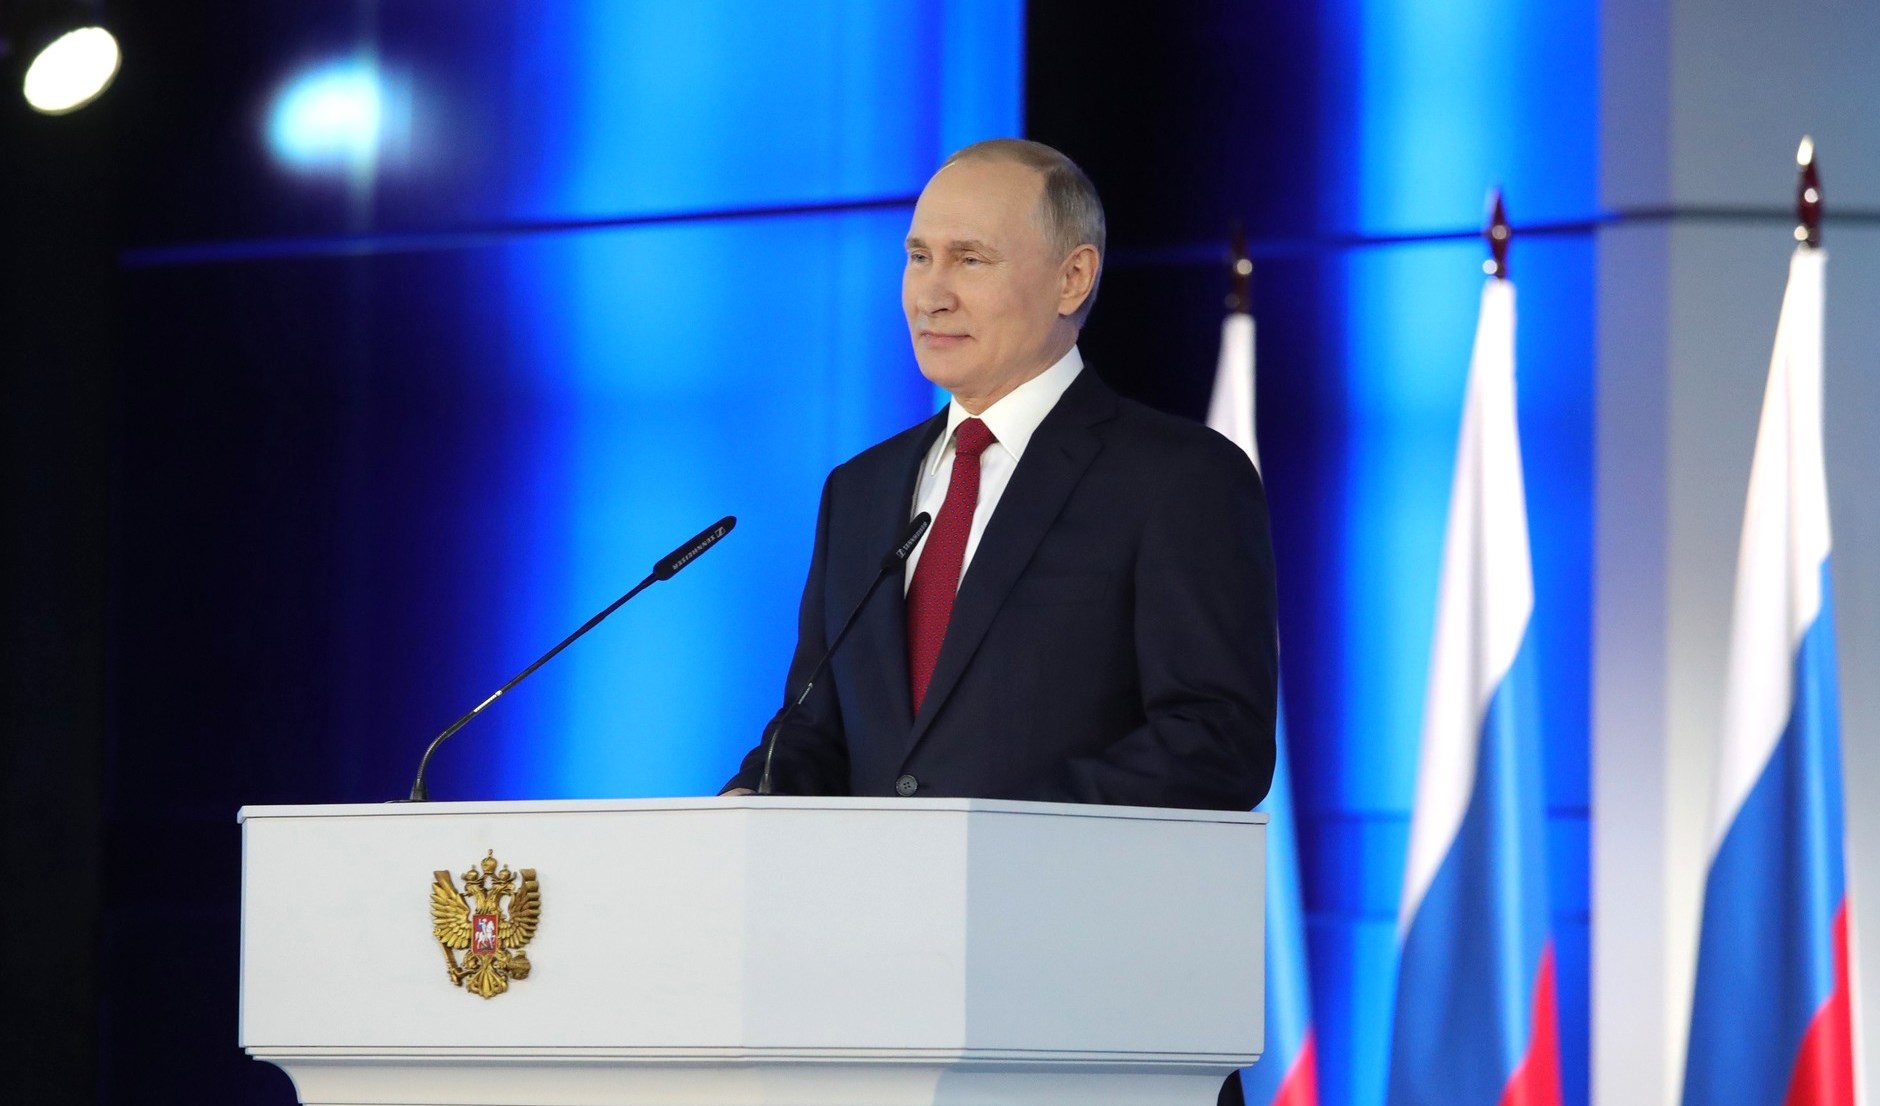 Владимир Путин: "Перед Россией стоят прорывные исторические задачи, и в их решении значим вклад каждого."